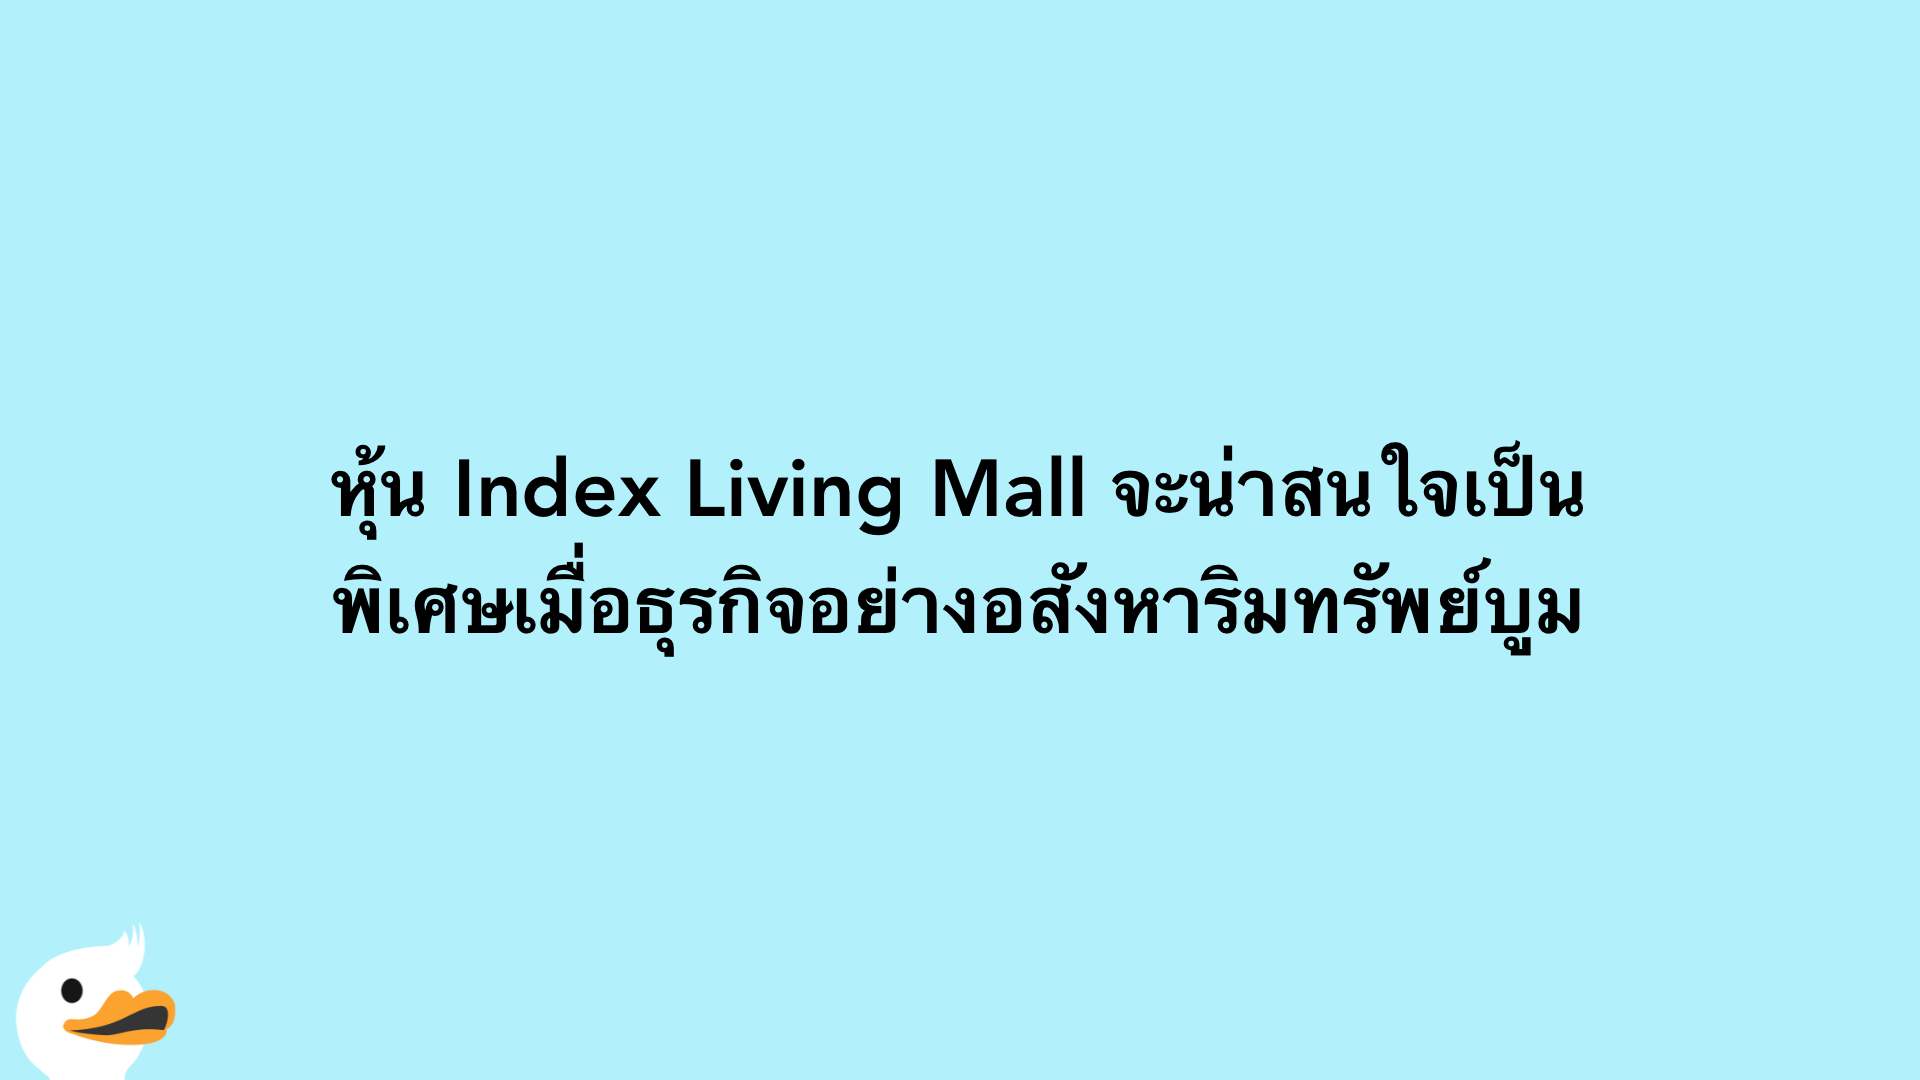 หุ้น Index Living Mall จะน่าสนใจเป็นพิเศษเมื่อธุรกิจอย่างอสังหาริมทรัพย์บูม